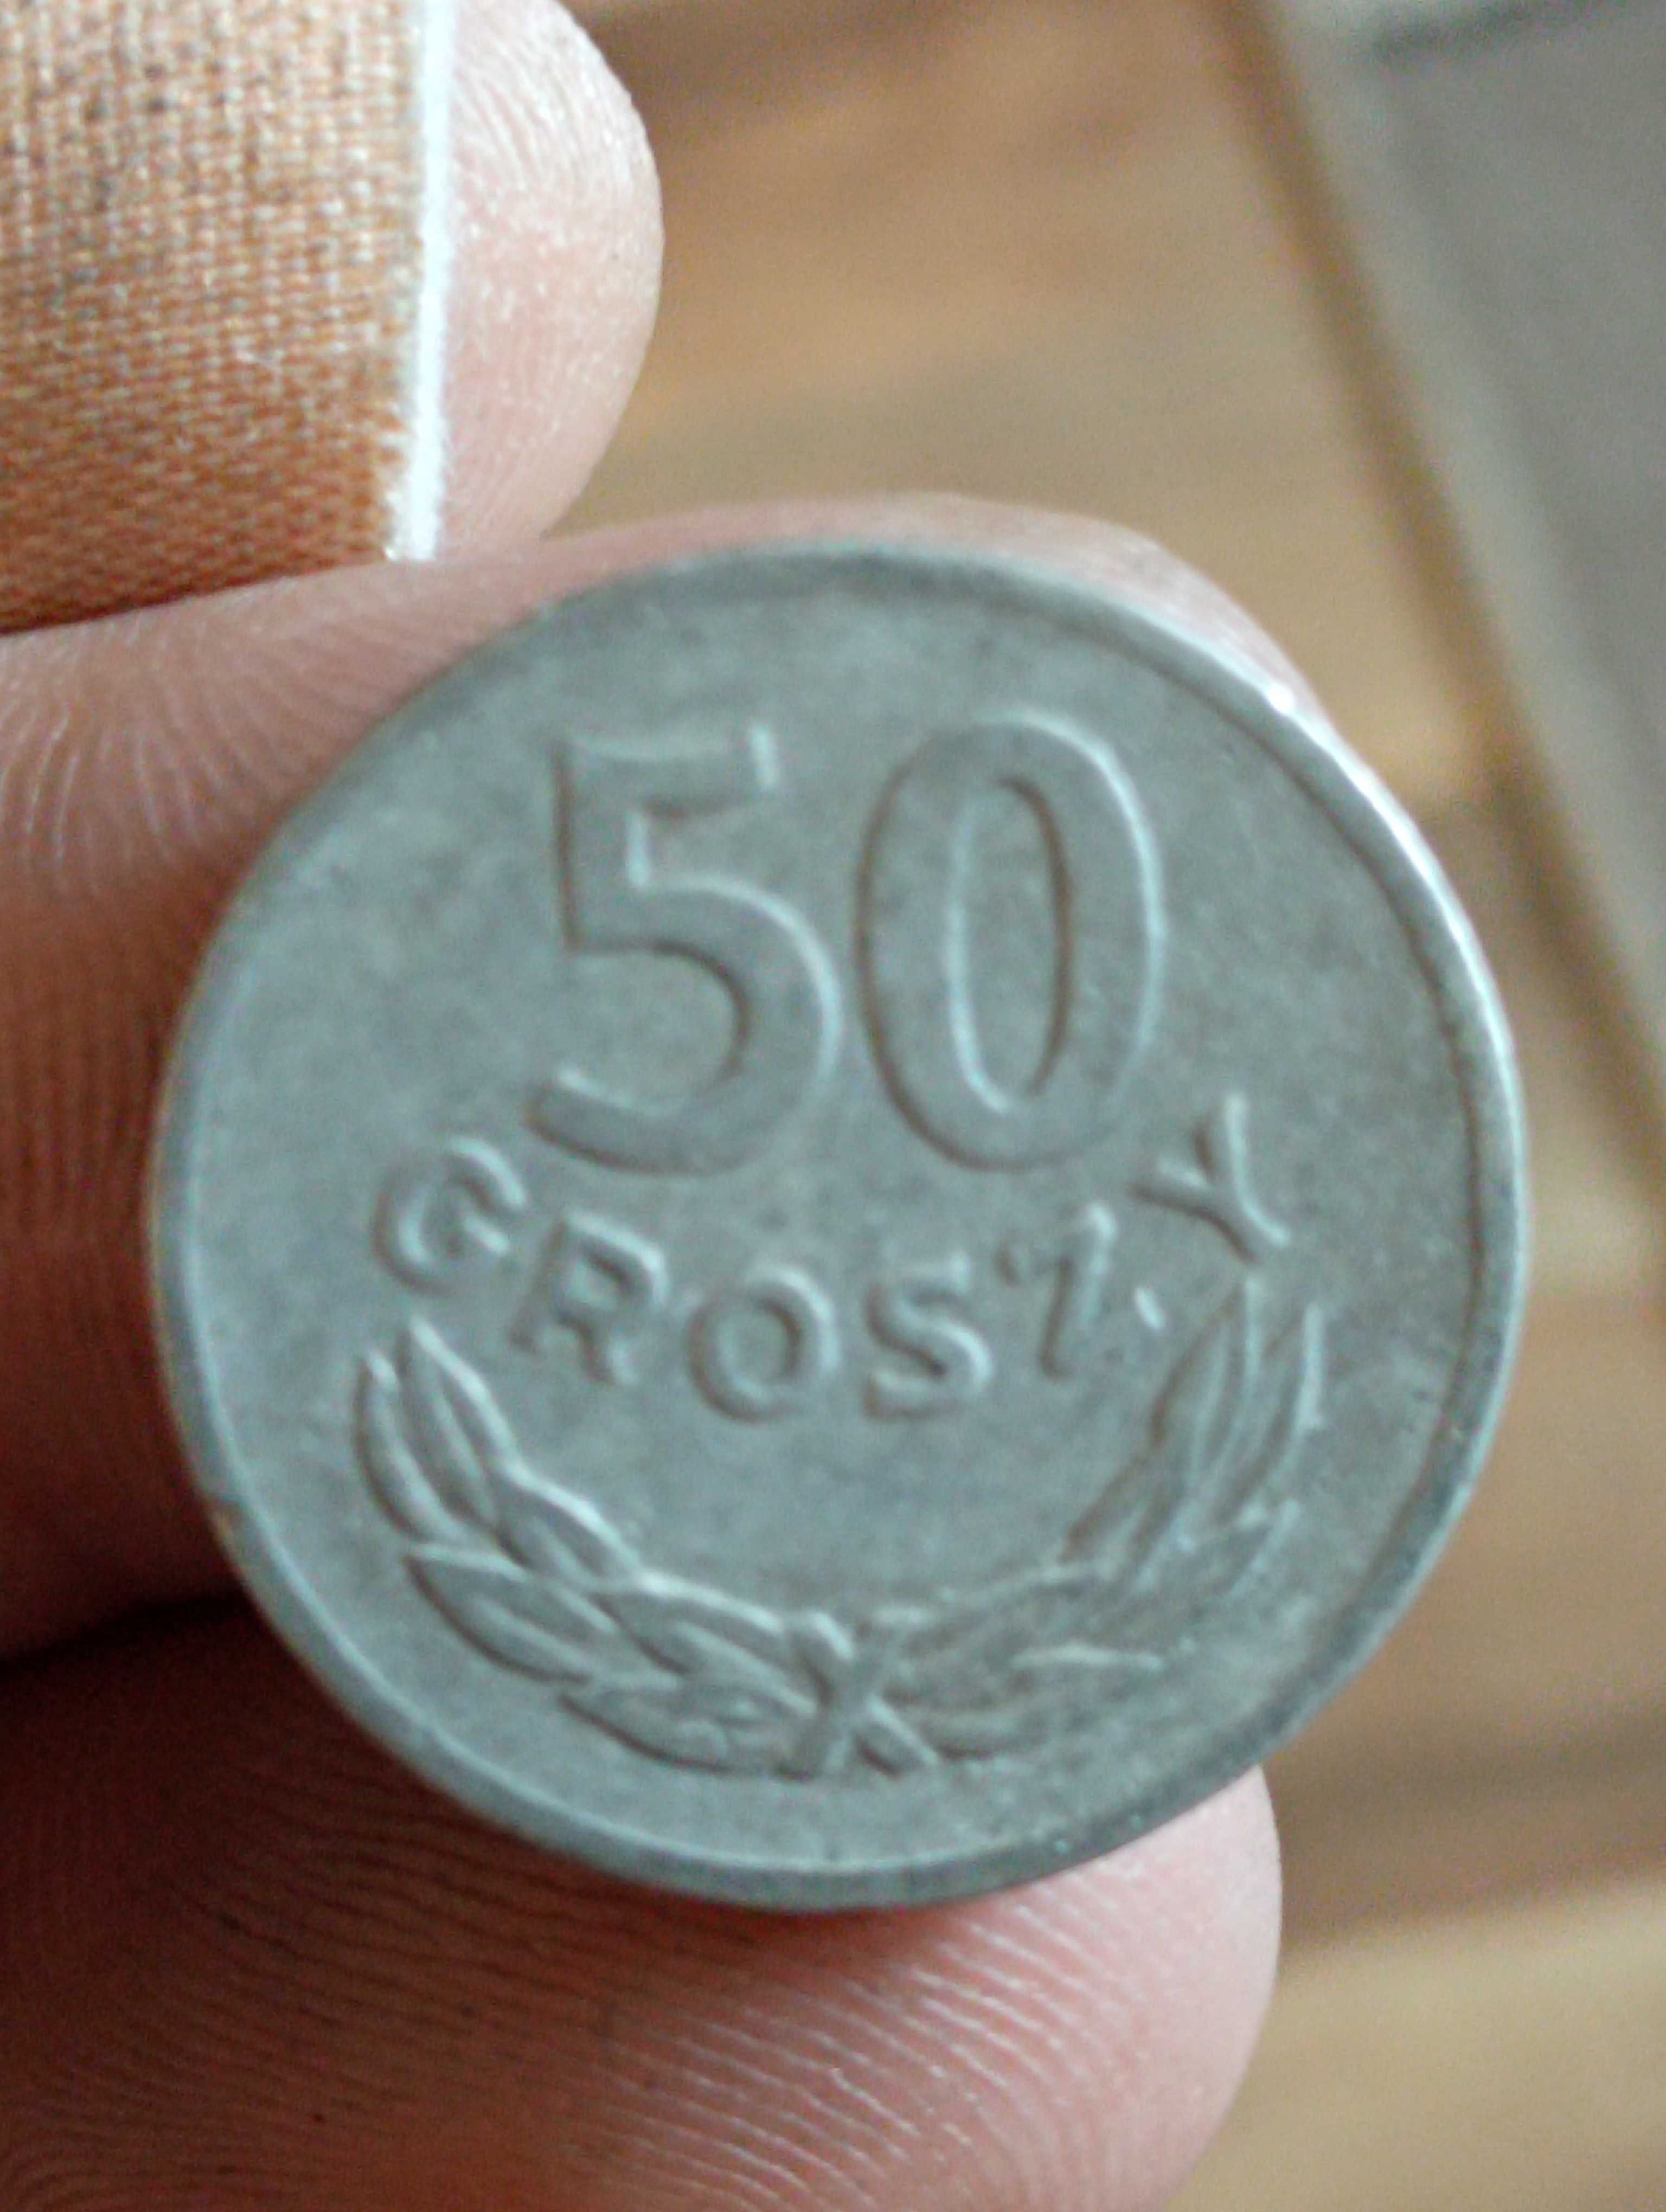 Sprzedam monete 50 groszy 1973 r